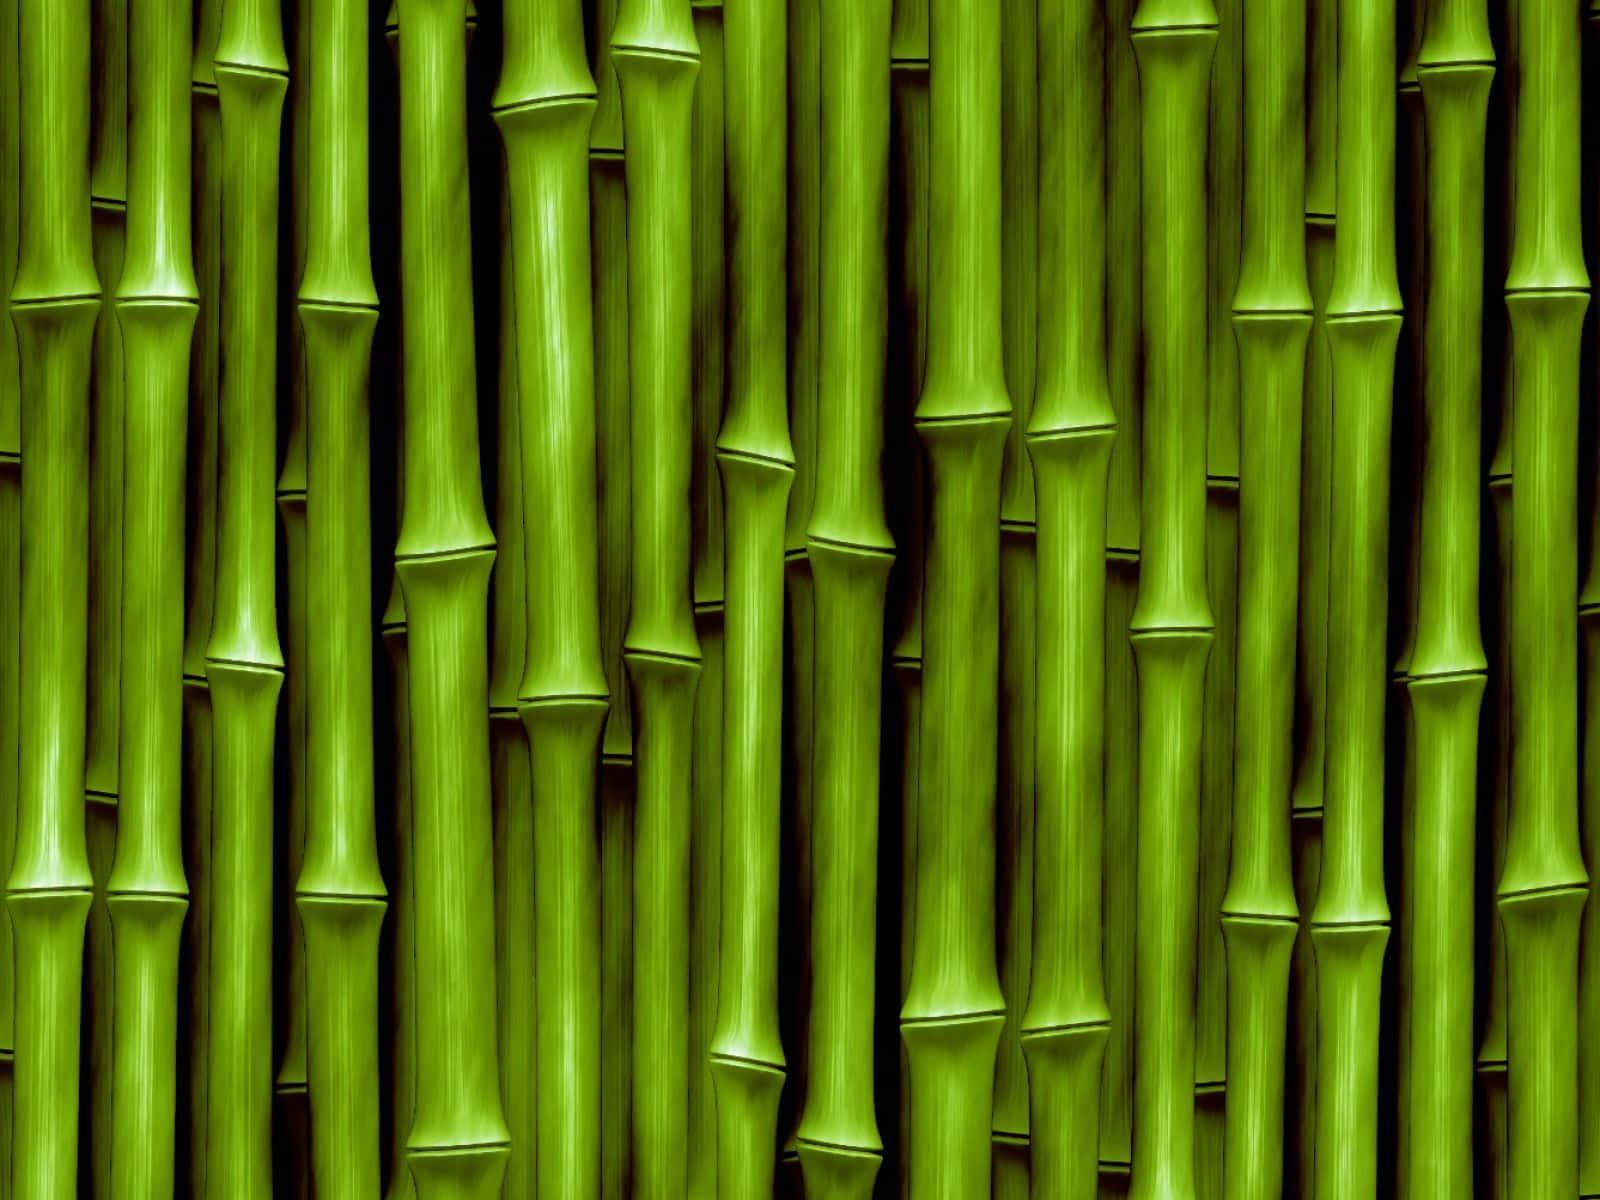 Fondode Pantalla De Tallos De Bambú - Impresión De Arte De Tallos De Bambú Fondo de pantalla